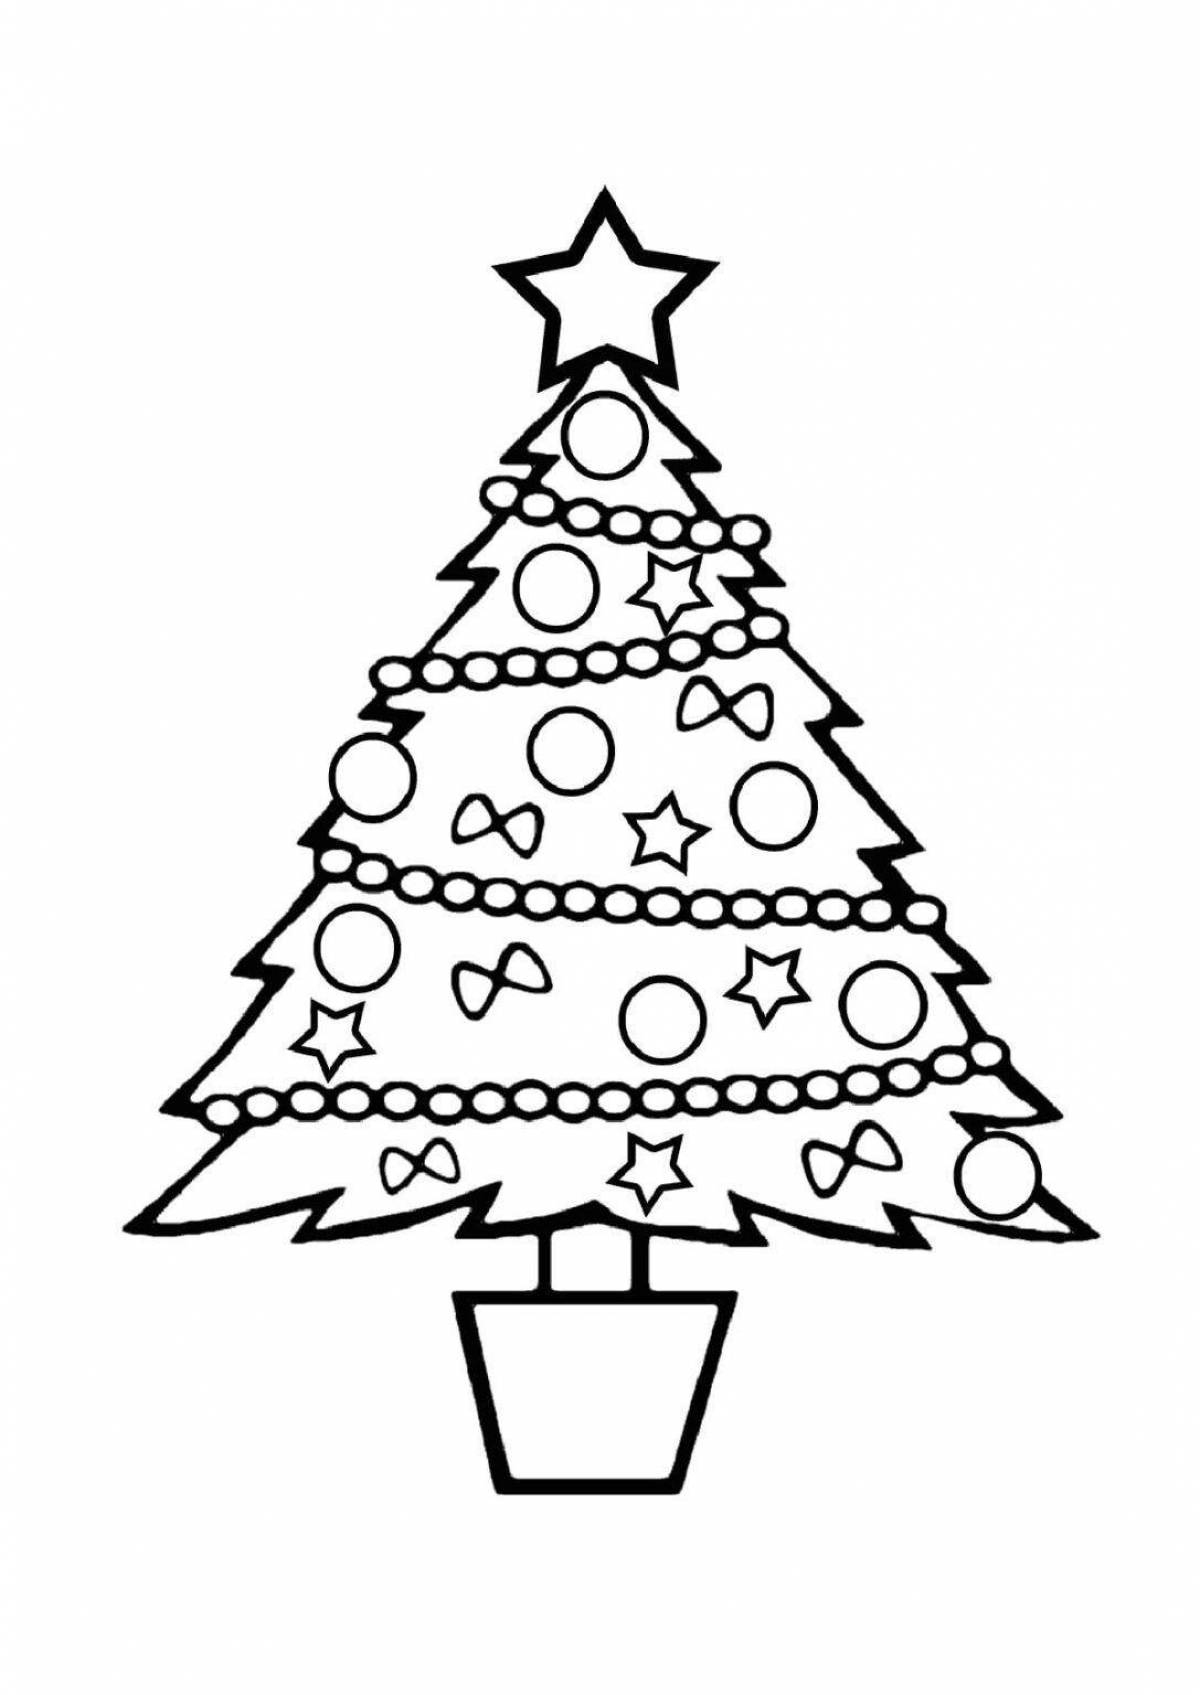 Раскраска яркая новогодняя елка для детей 3-4 лет